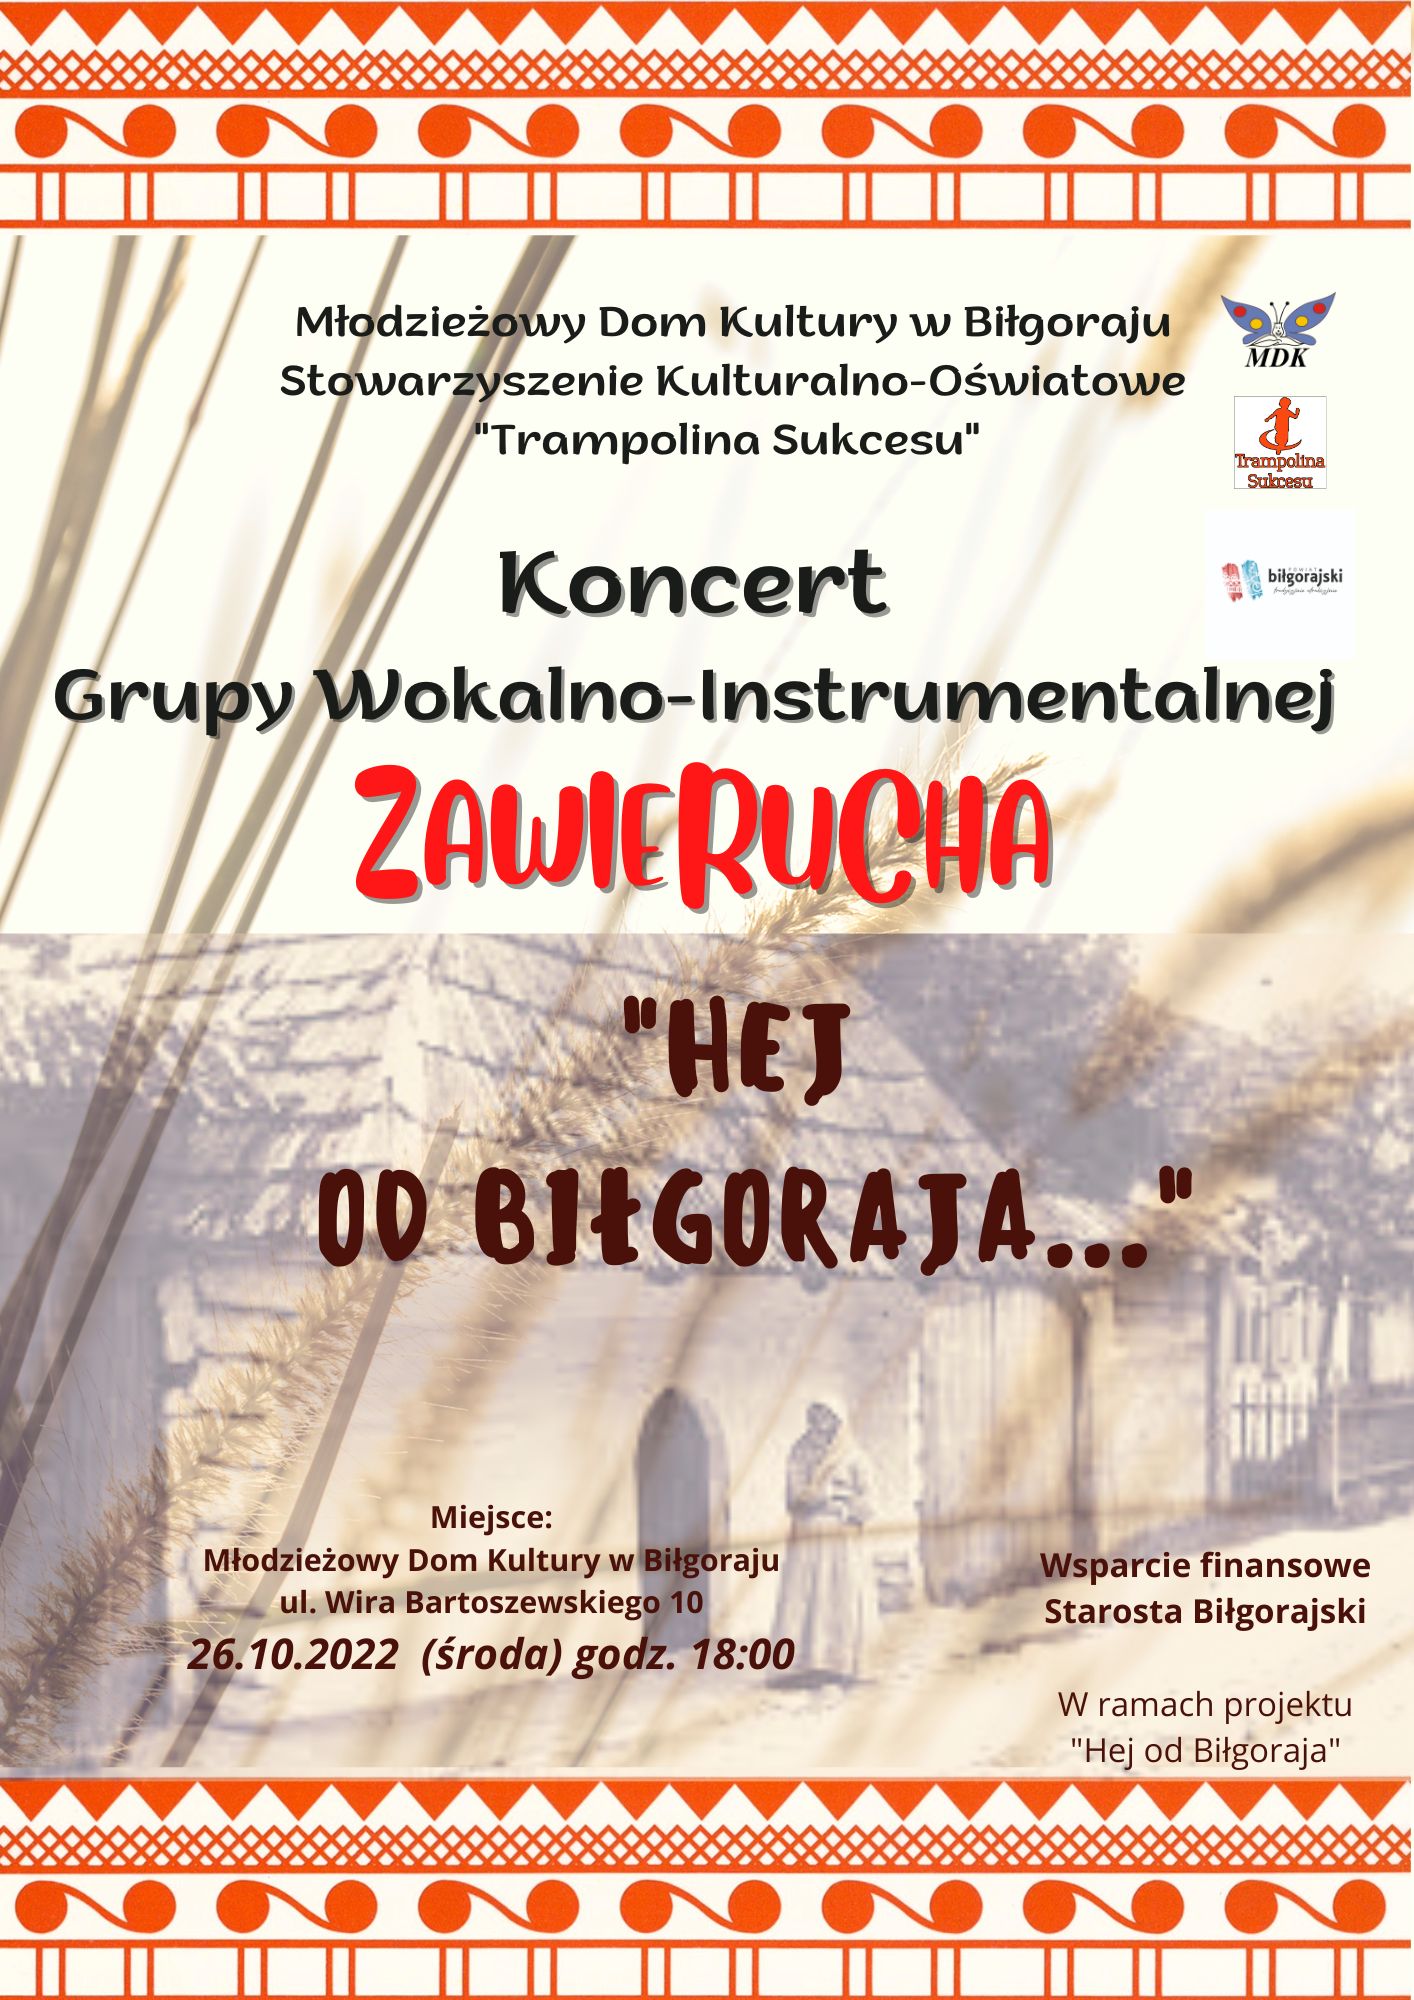 Plakat - Koncert grupy wokalno-instrumentalnej Zawierucha 26 października 2022 Pionowy